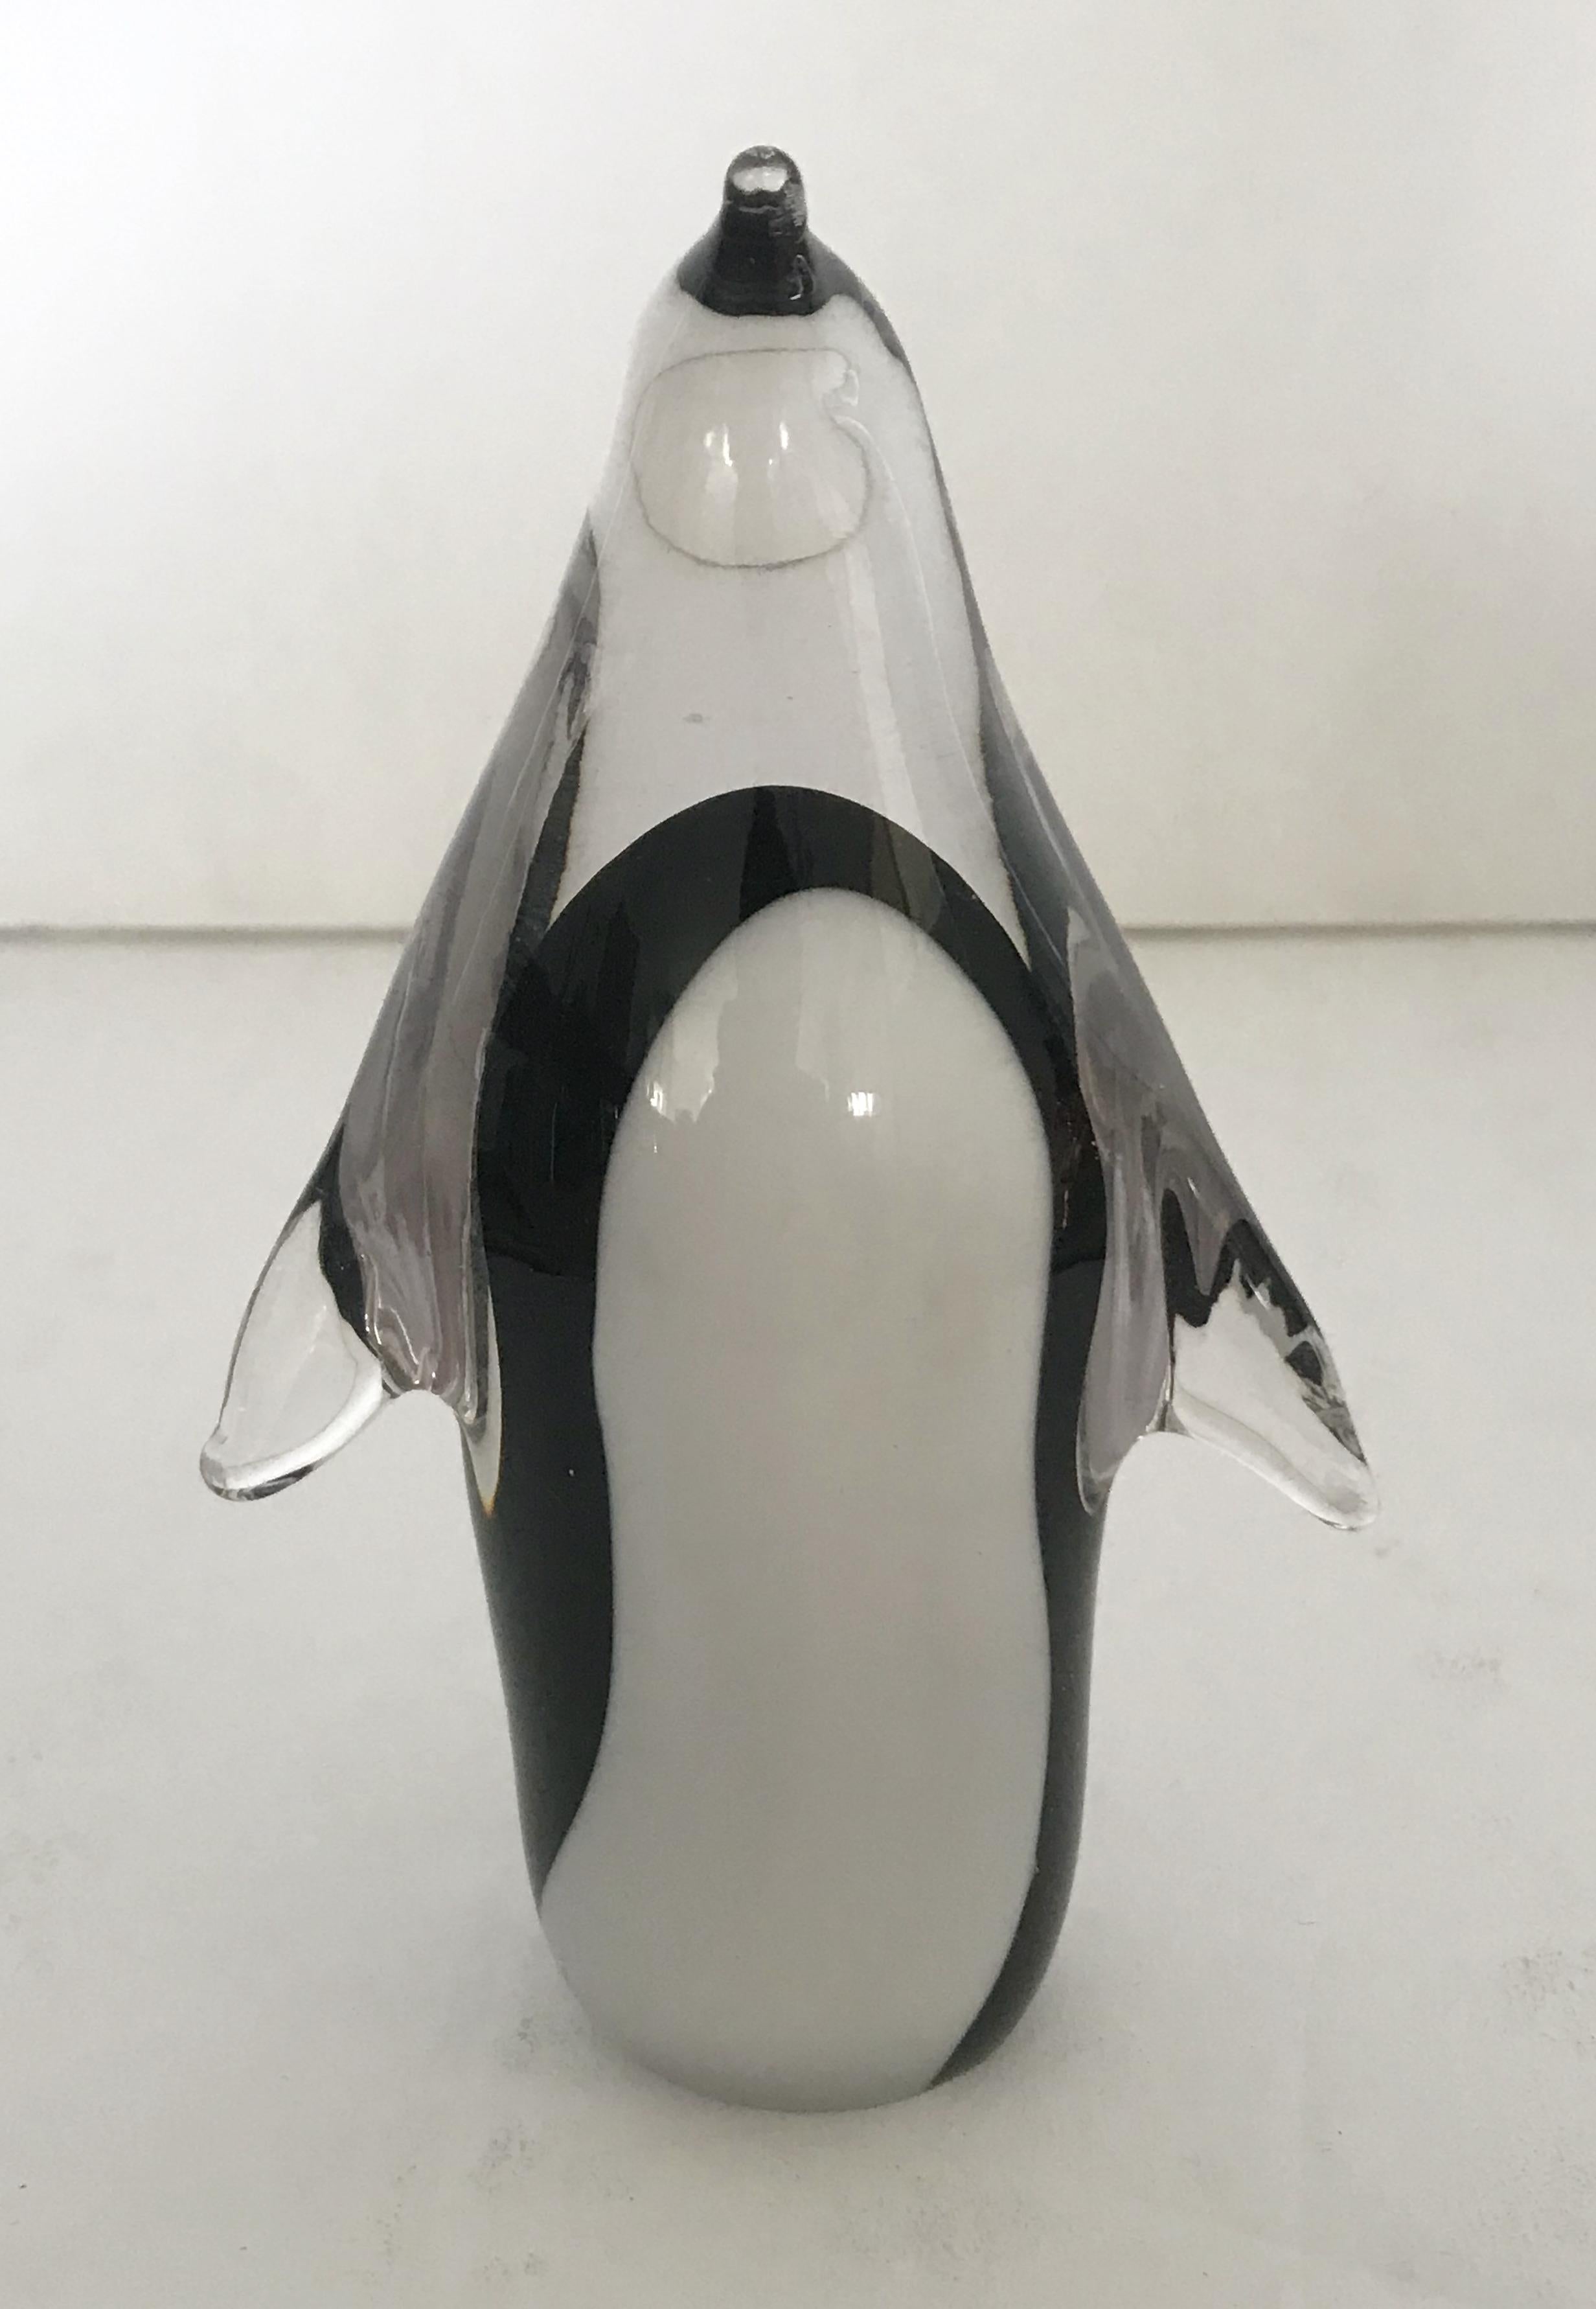 Sculpture vintage de pingouin en verre de Murano soufflé à la main, de couleur claire, noire et blanche / Fabriqué en Italie, vers 1970
Mesures : hauteur 5 pouces, largeur 3 pouces, profondeur 2 pouces
1 en stock à Palm Springs EN SOLDE à 50% pour